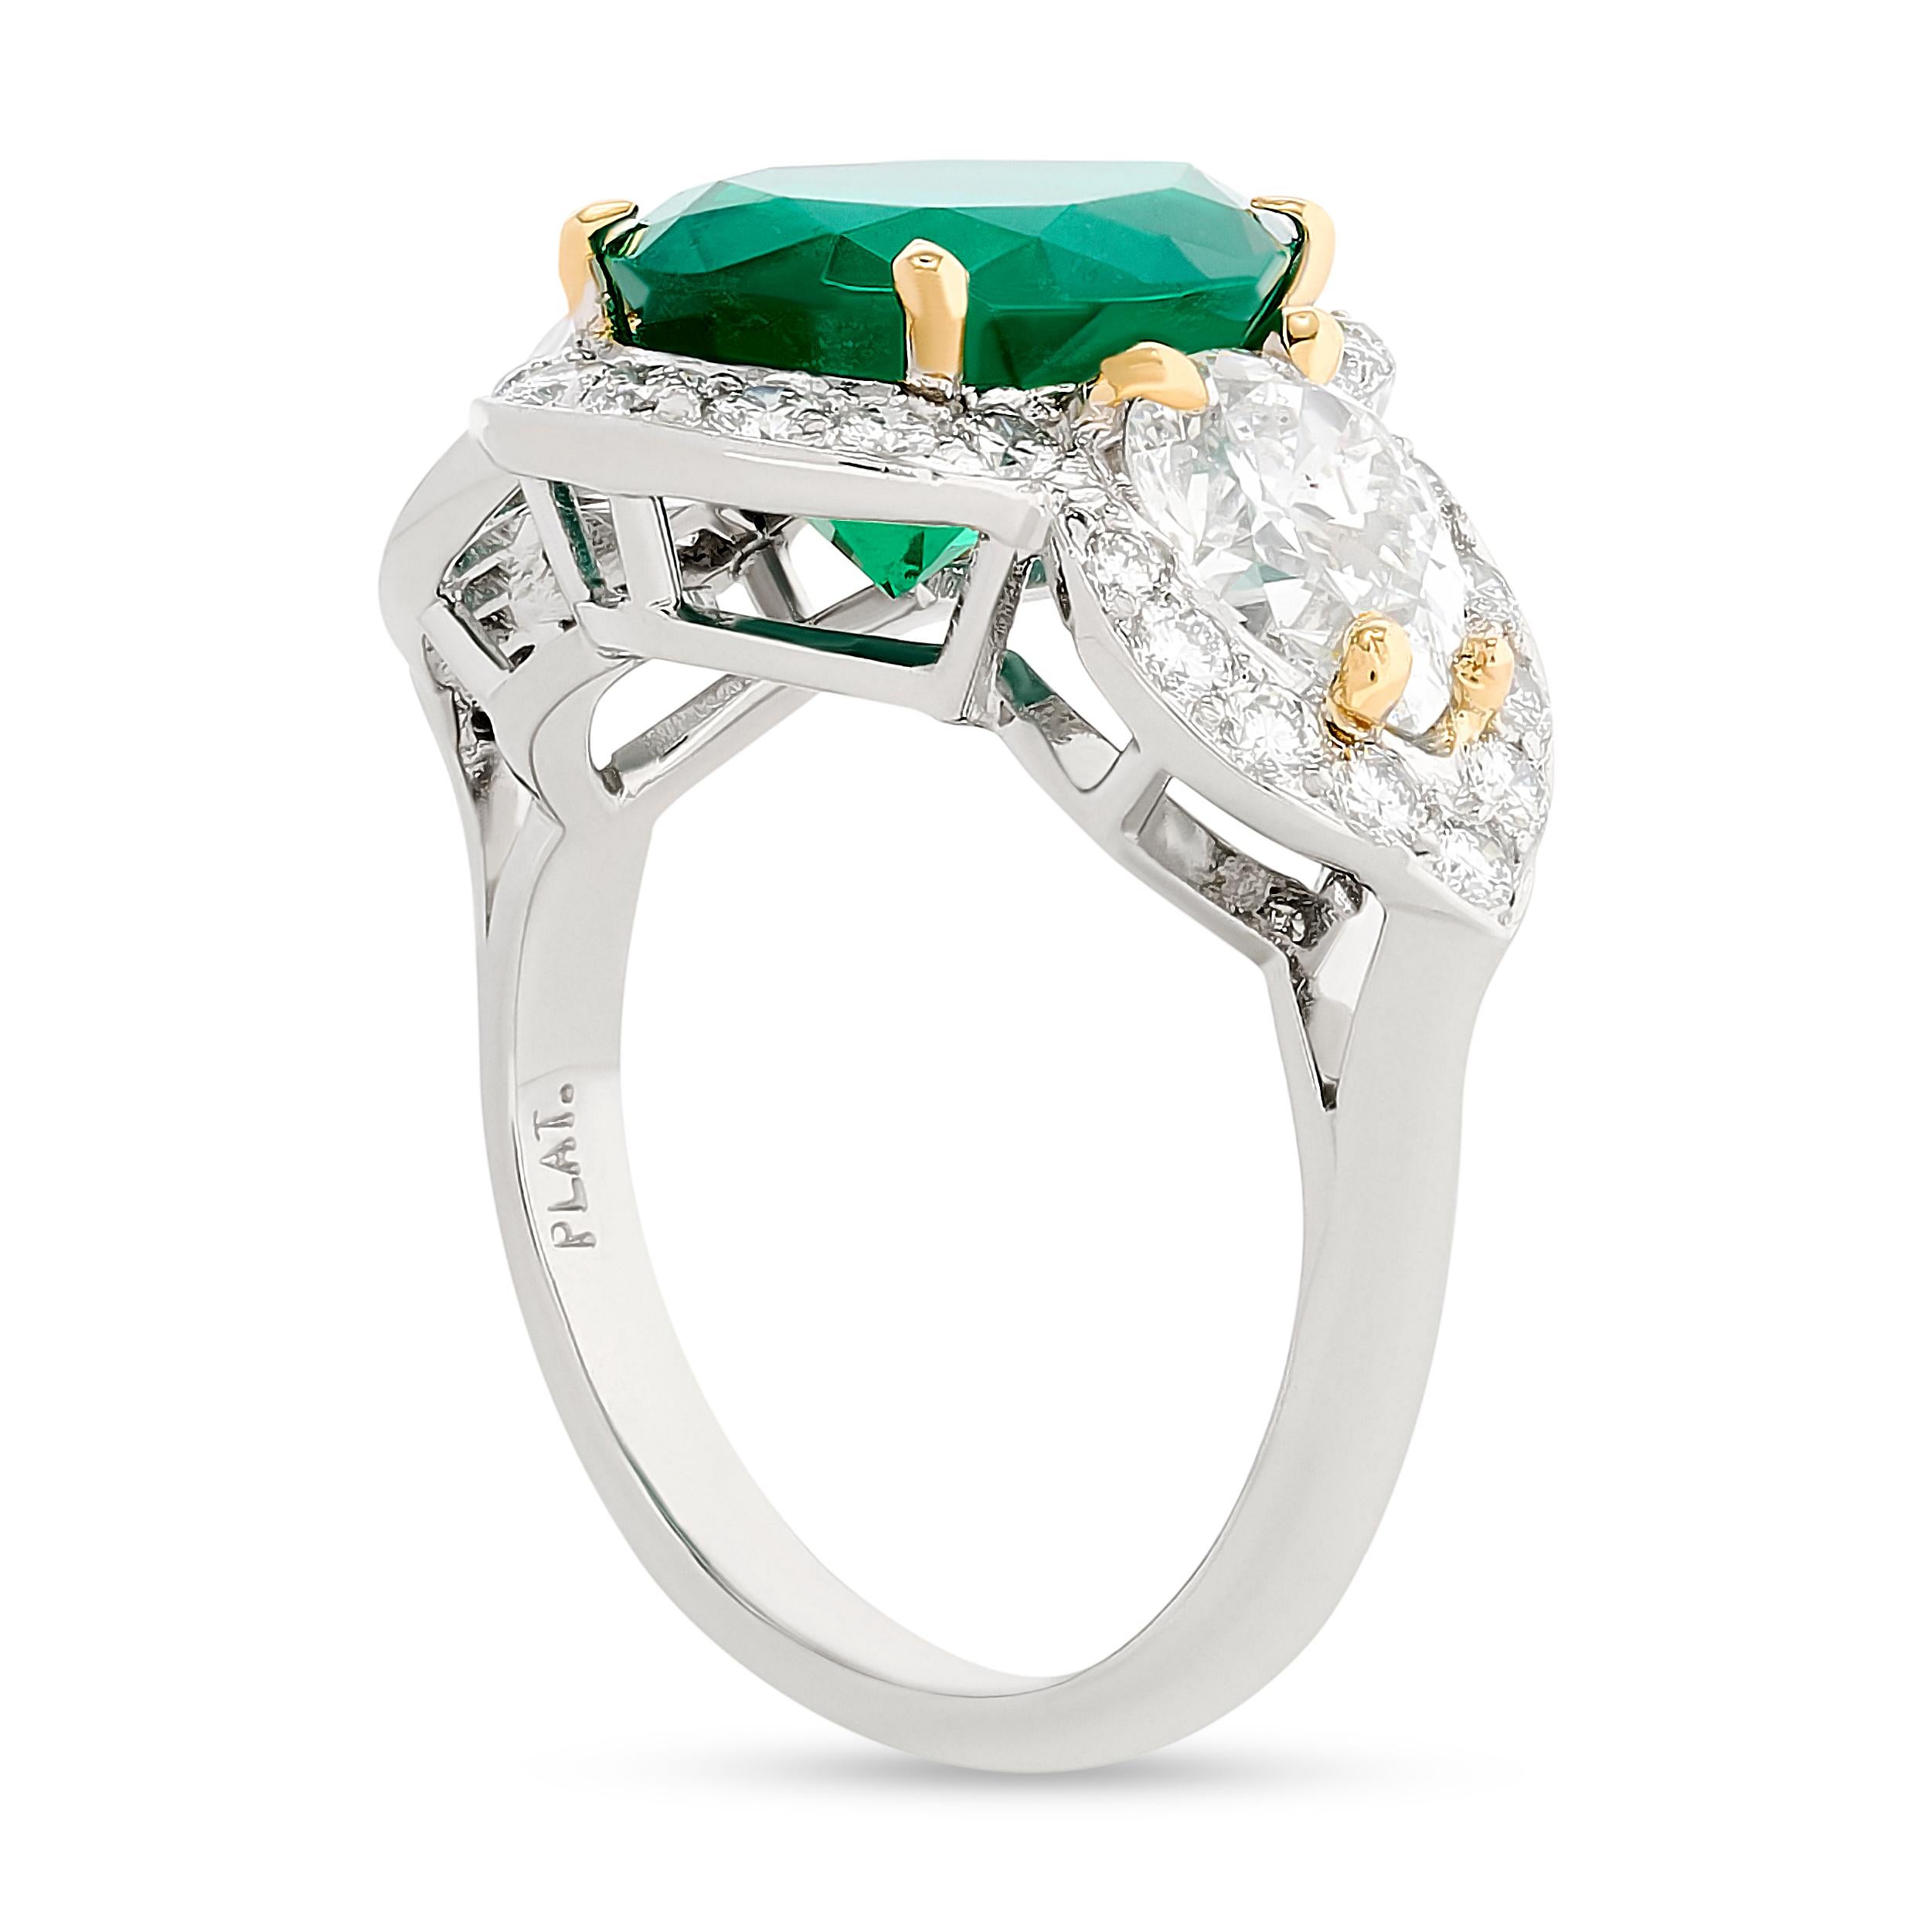 Ein Hauch von Grün, der Ihren Tag erhellt. 

Dieser Ring von Fred Leighton hat einen wunderschönen grünen Smaragd mit einem Gewicht von ca. 3,81 Karat, begleitet von einem GIA Colombia F1 Zertifikat. Es gibt eine Birne Form Diamant auf jeder Seite,